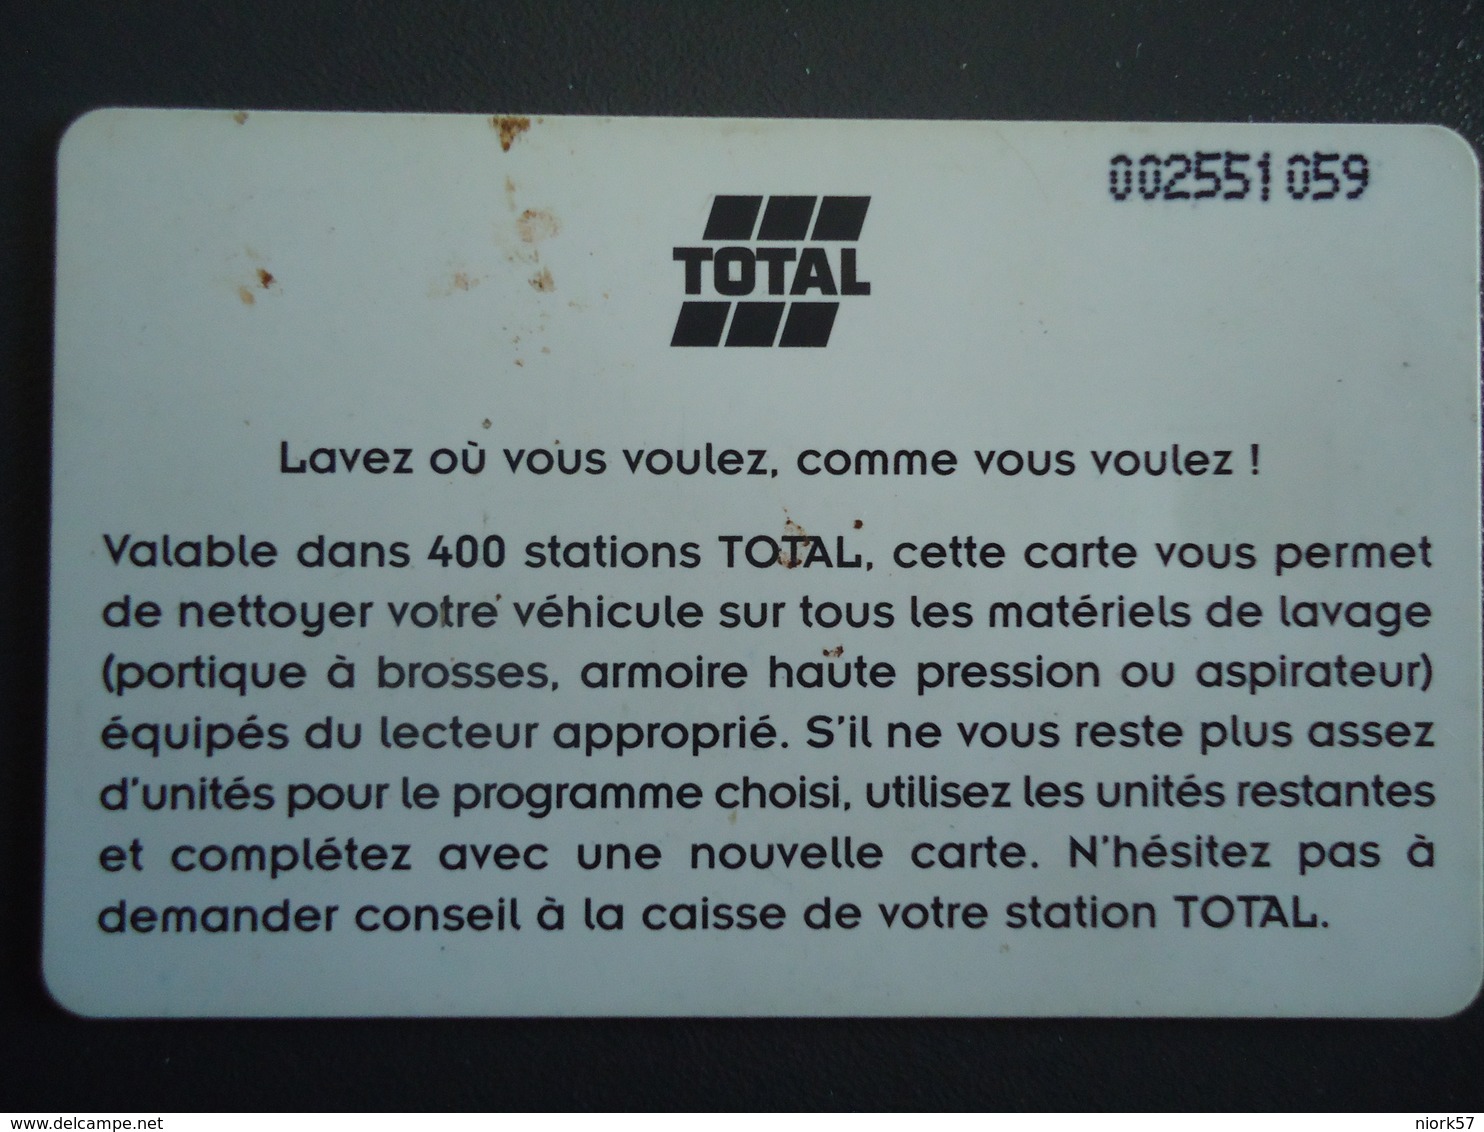 FRANCE  USED CARDS  RARE TOTAL  OIL  CARTE LAVAGE 18 UNITES - Non Classificati